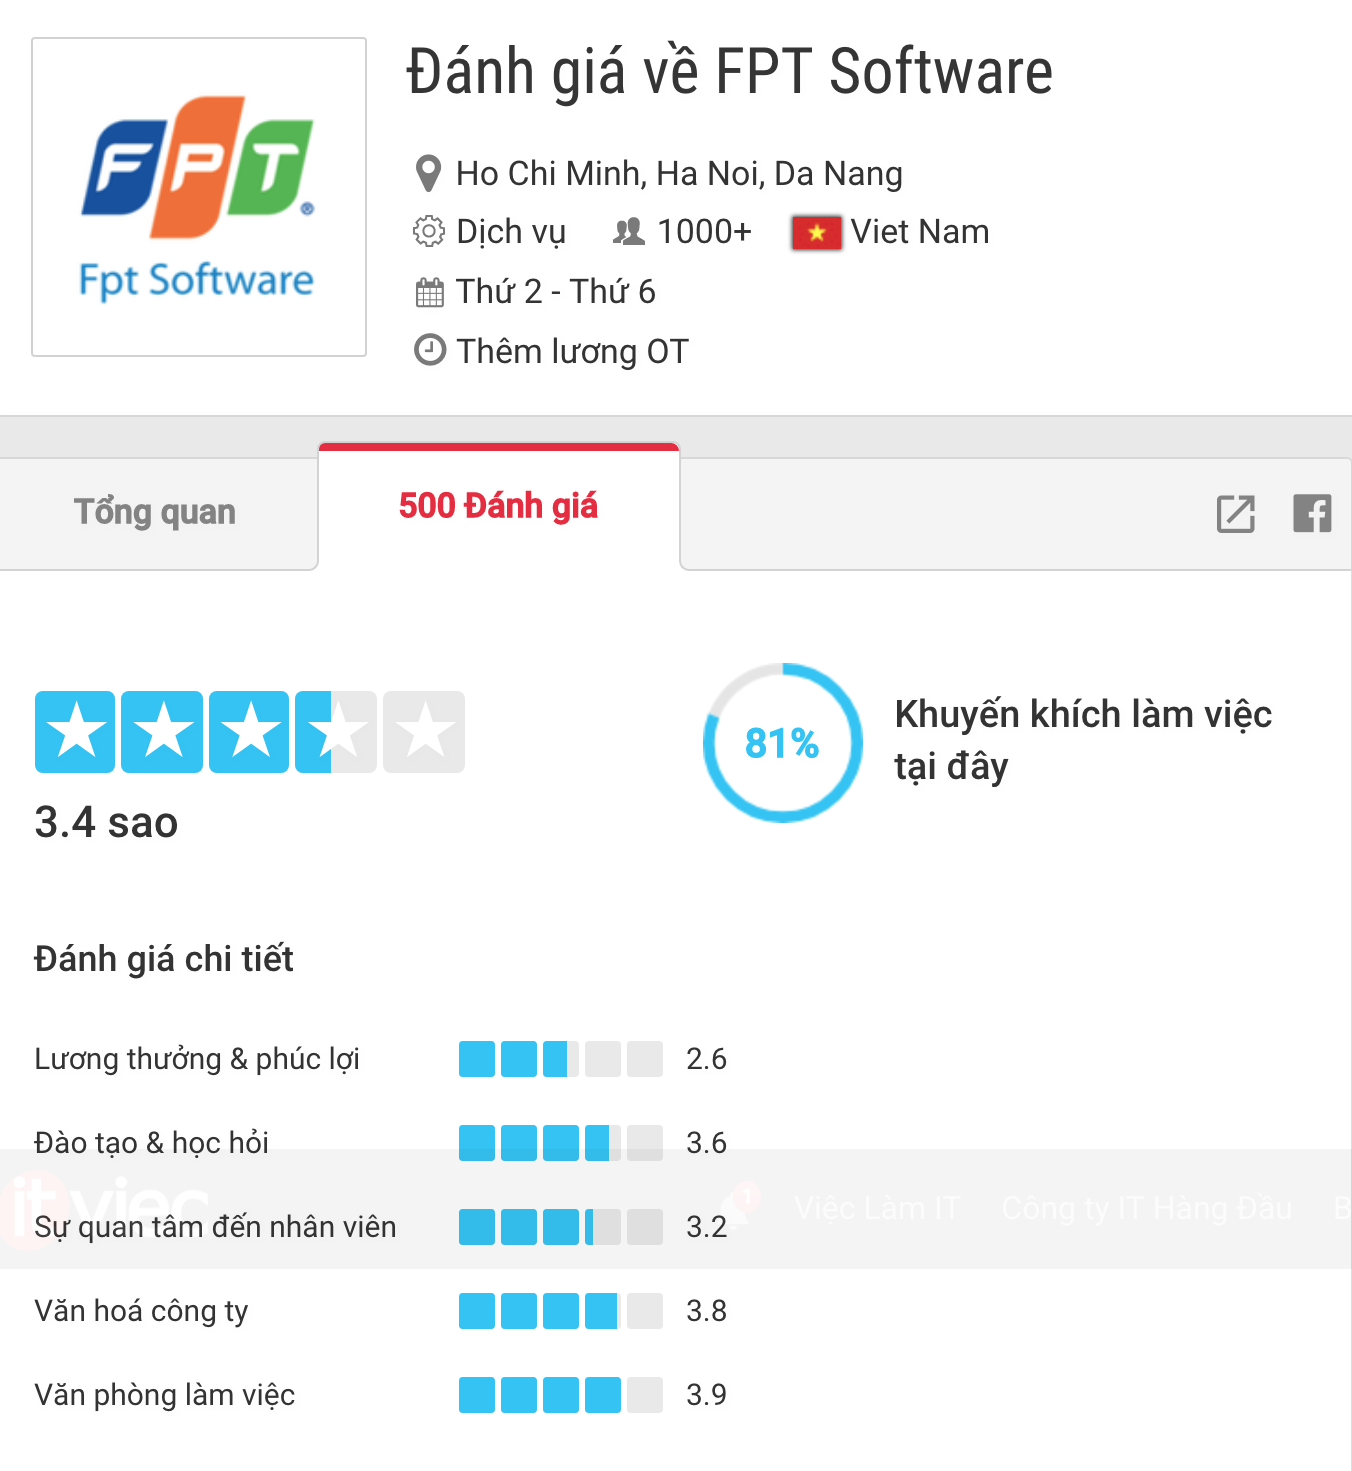 FPT Software là công ty nhận được nhiều đánh giá nhất (hơn 500 đánh giá) trên ITviec.com. 